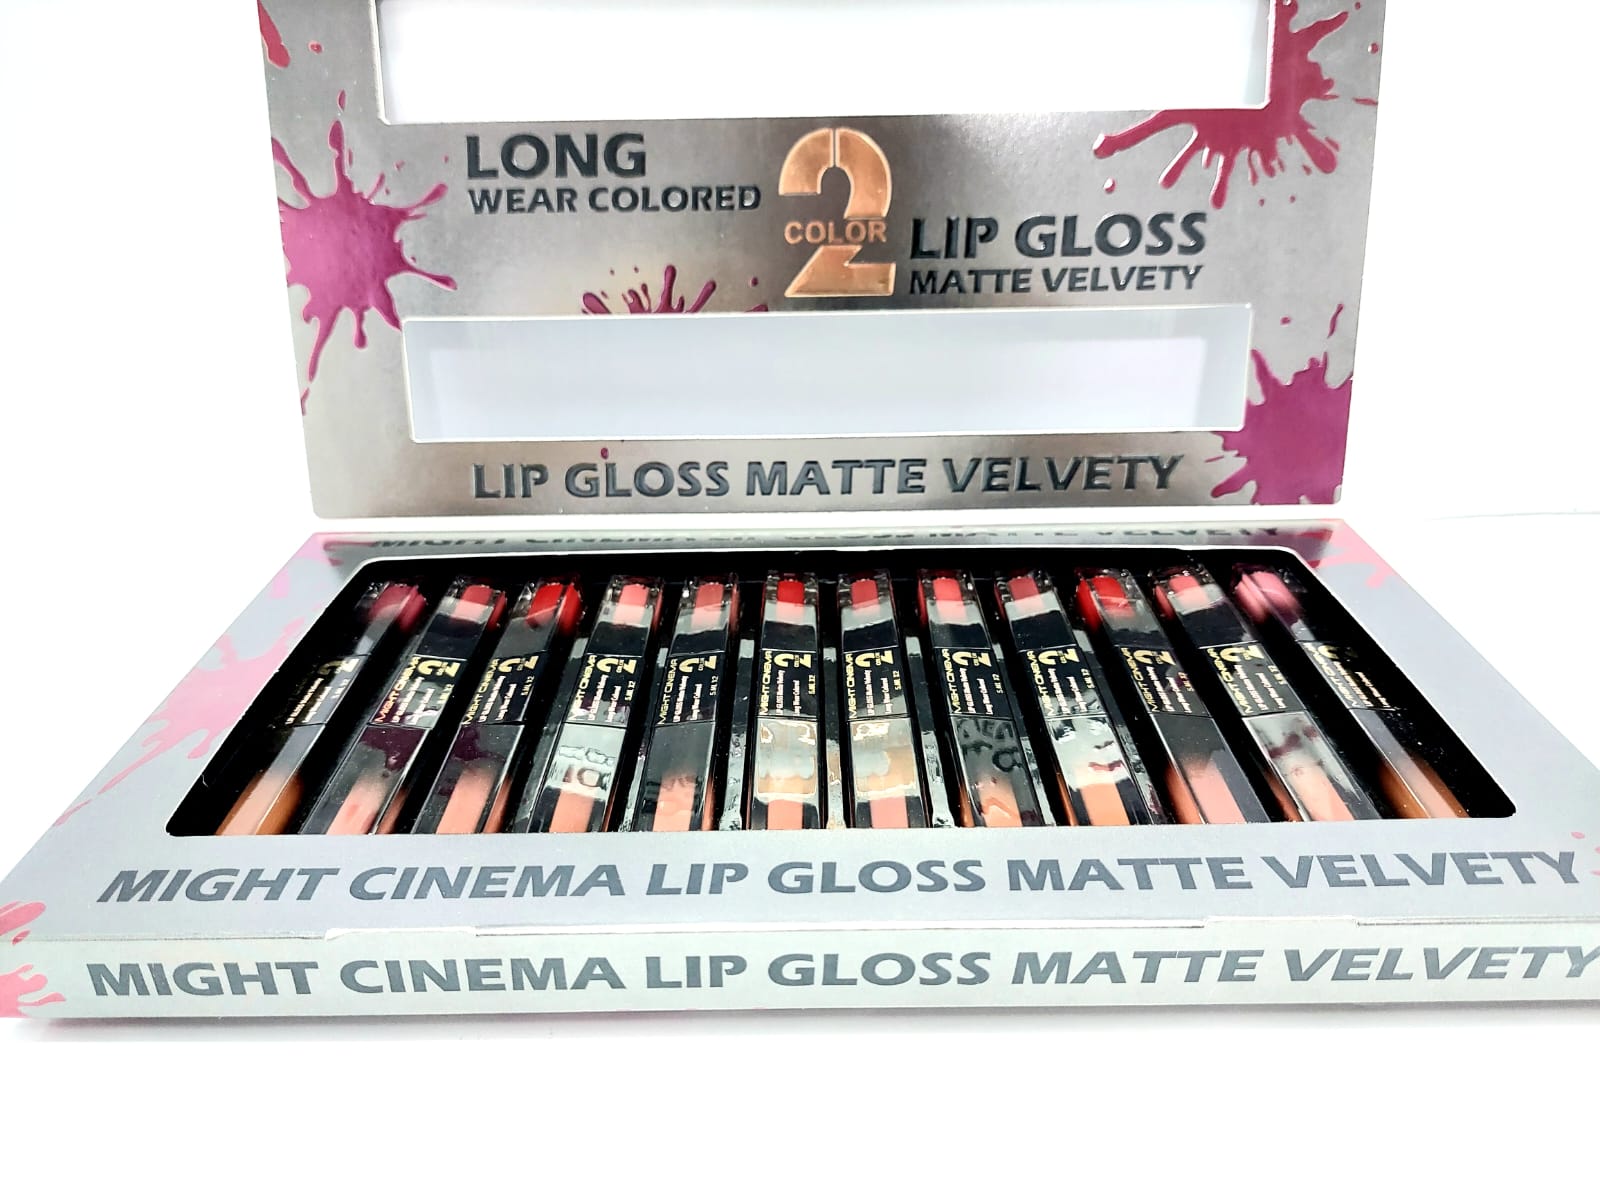 Might Cinema Long Wear Colored Lip Gloss Matte Velvet - 2 Color ( 12 Pcs )